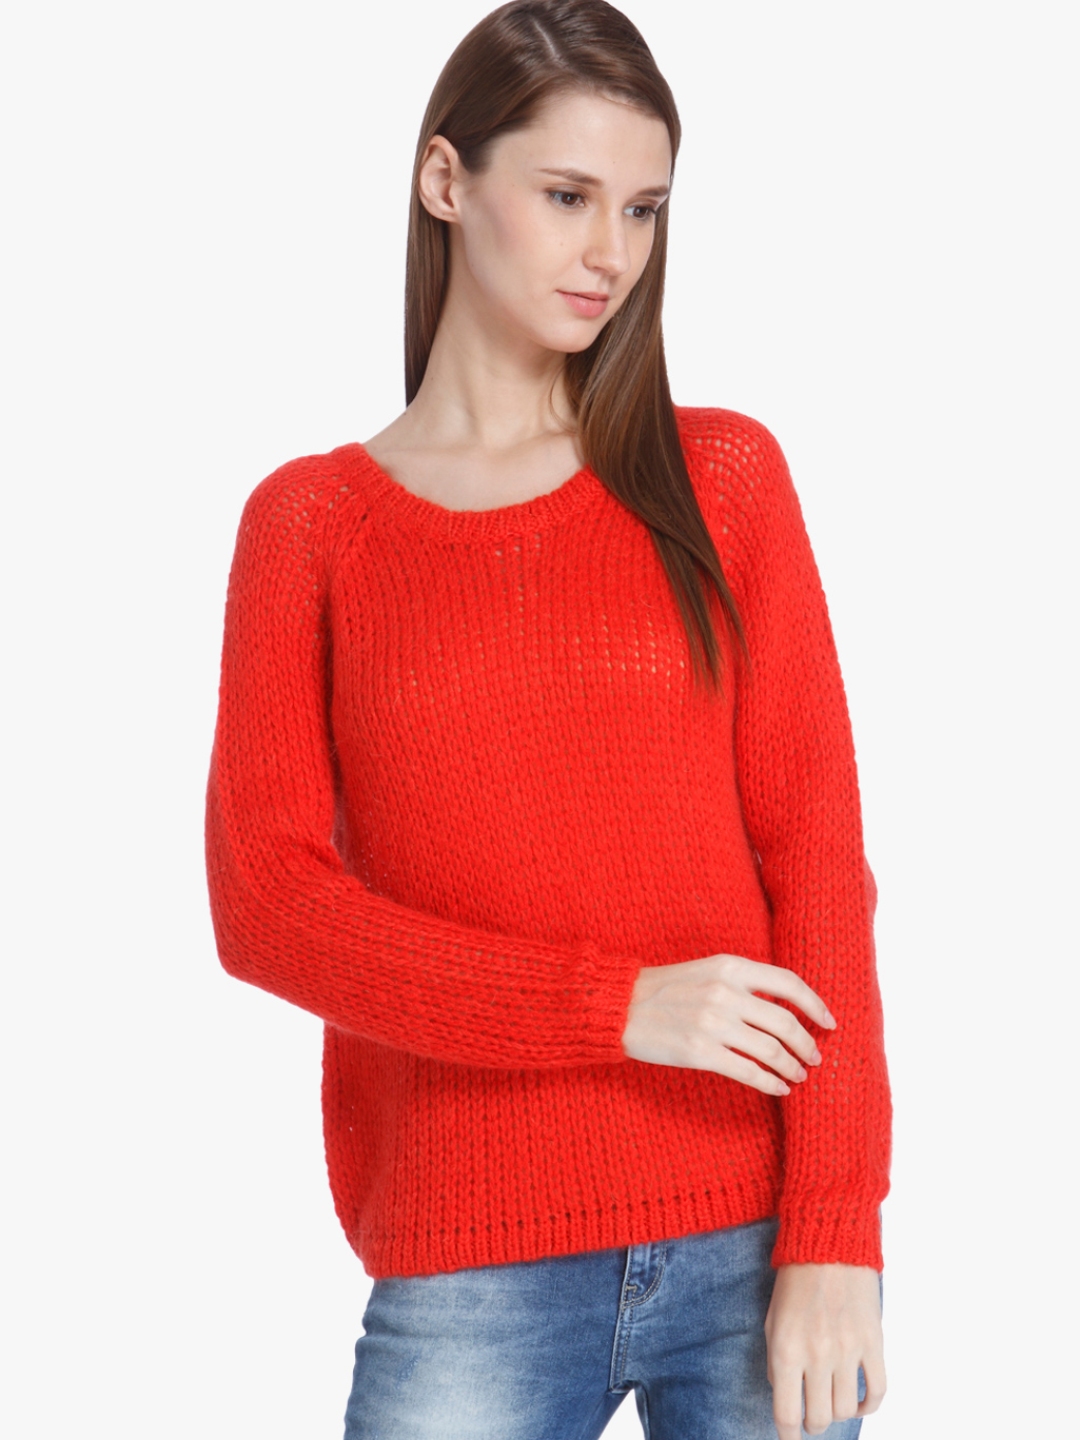 Buy Orange Solid Sweater - Sweaters for Women 7685271 | Myntra